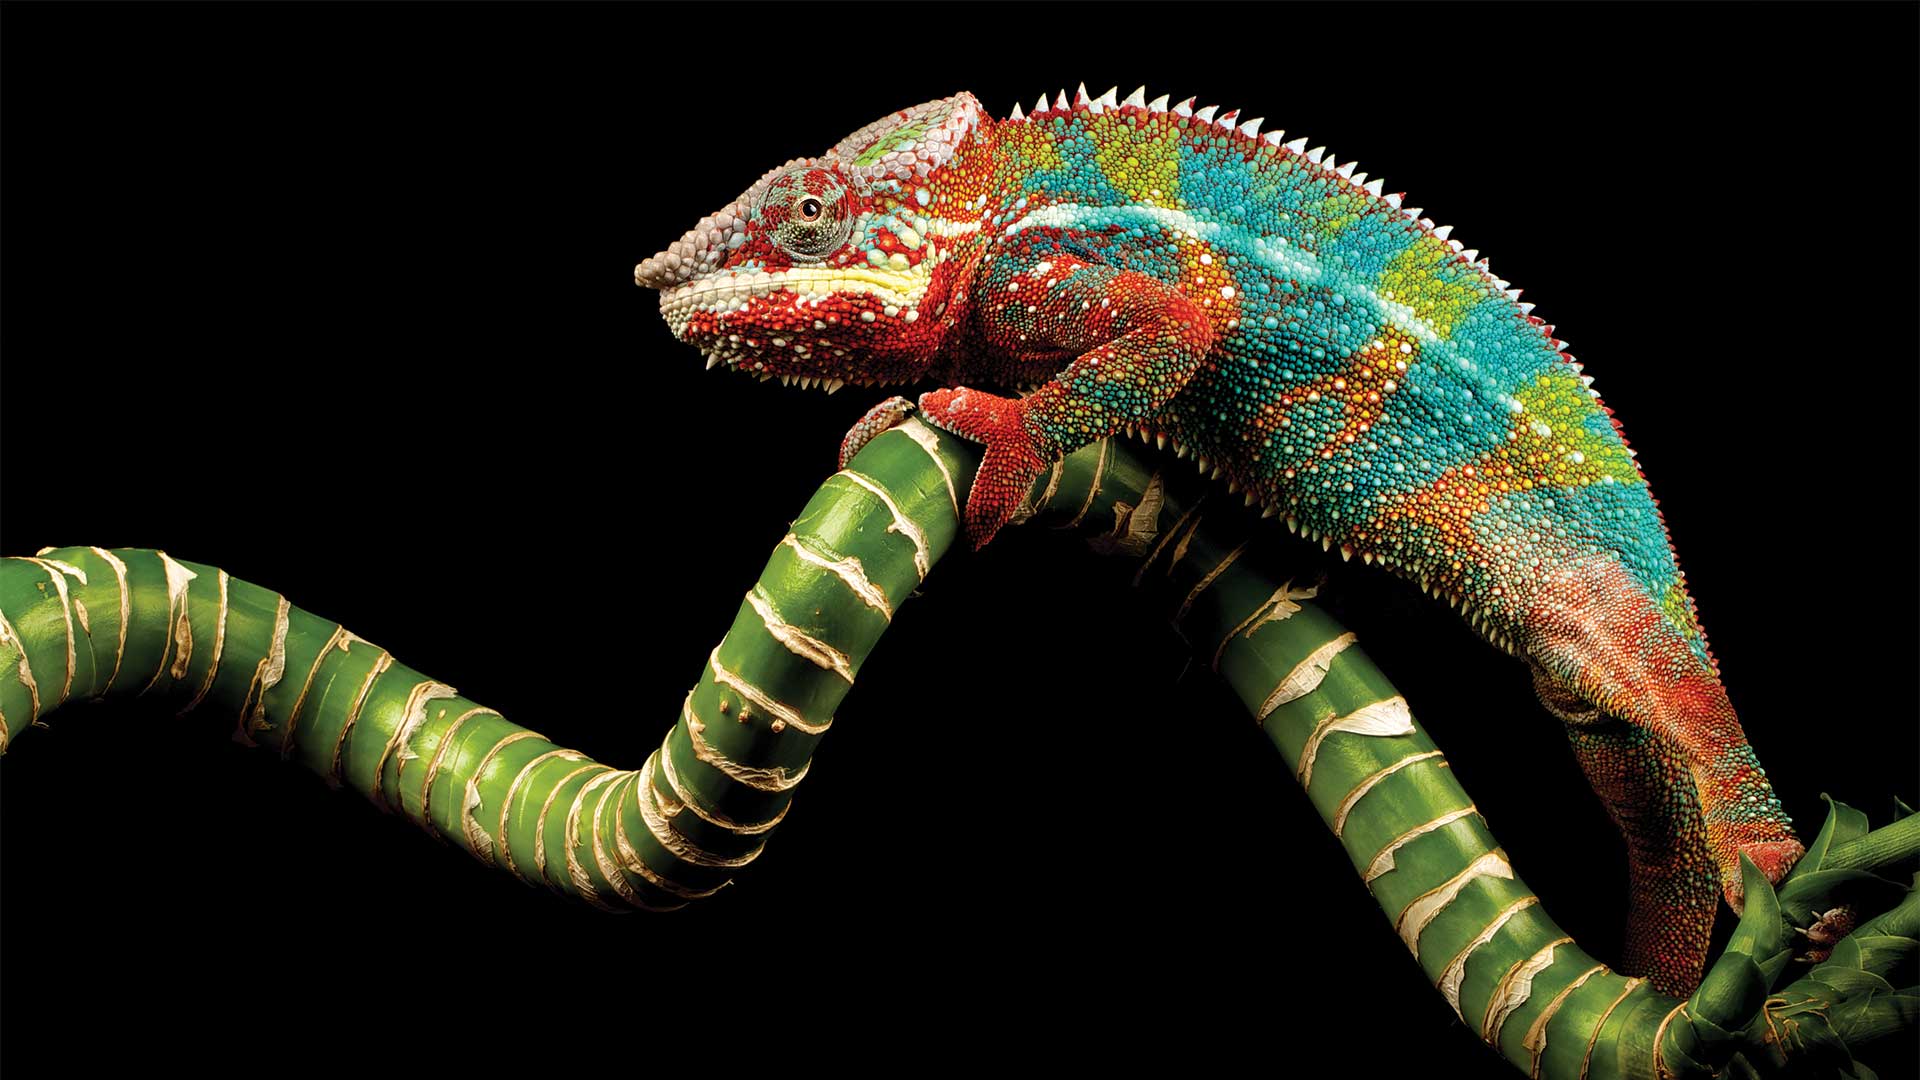 Multi-coloured chameleon on green plant